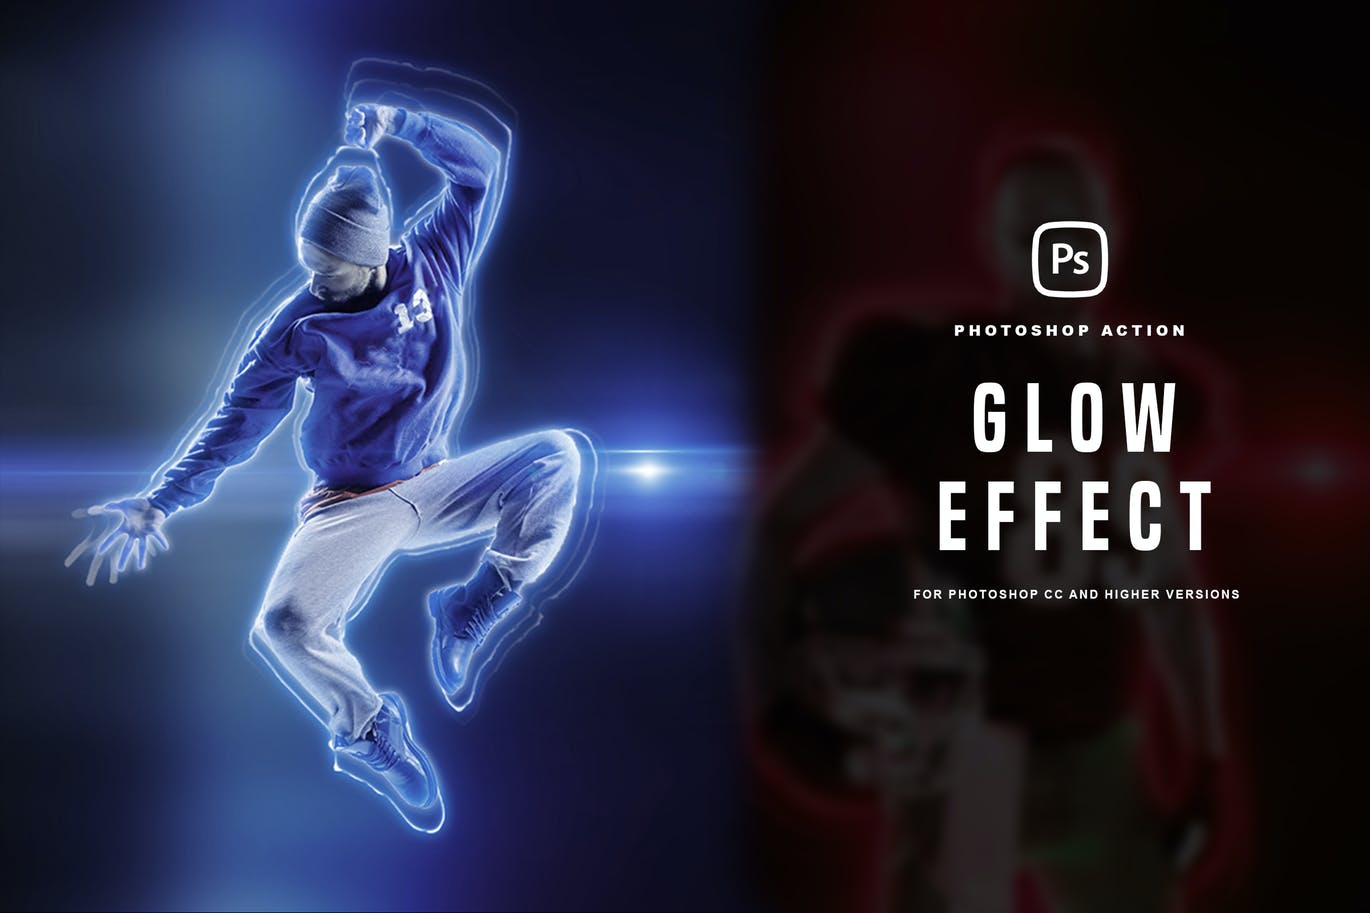 发亮发光PS照片效果动作 Glow Photoshop Effect 插件预设 第1张